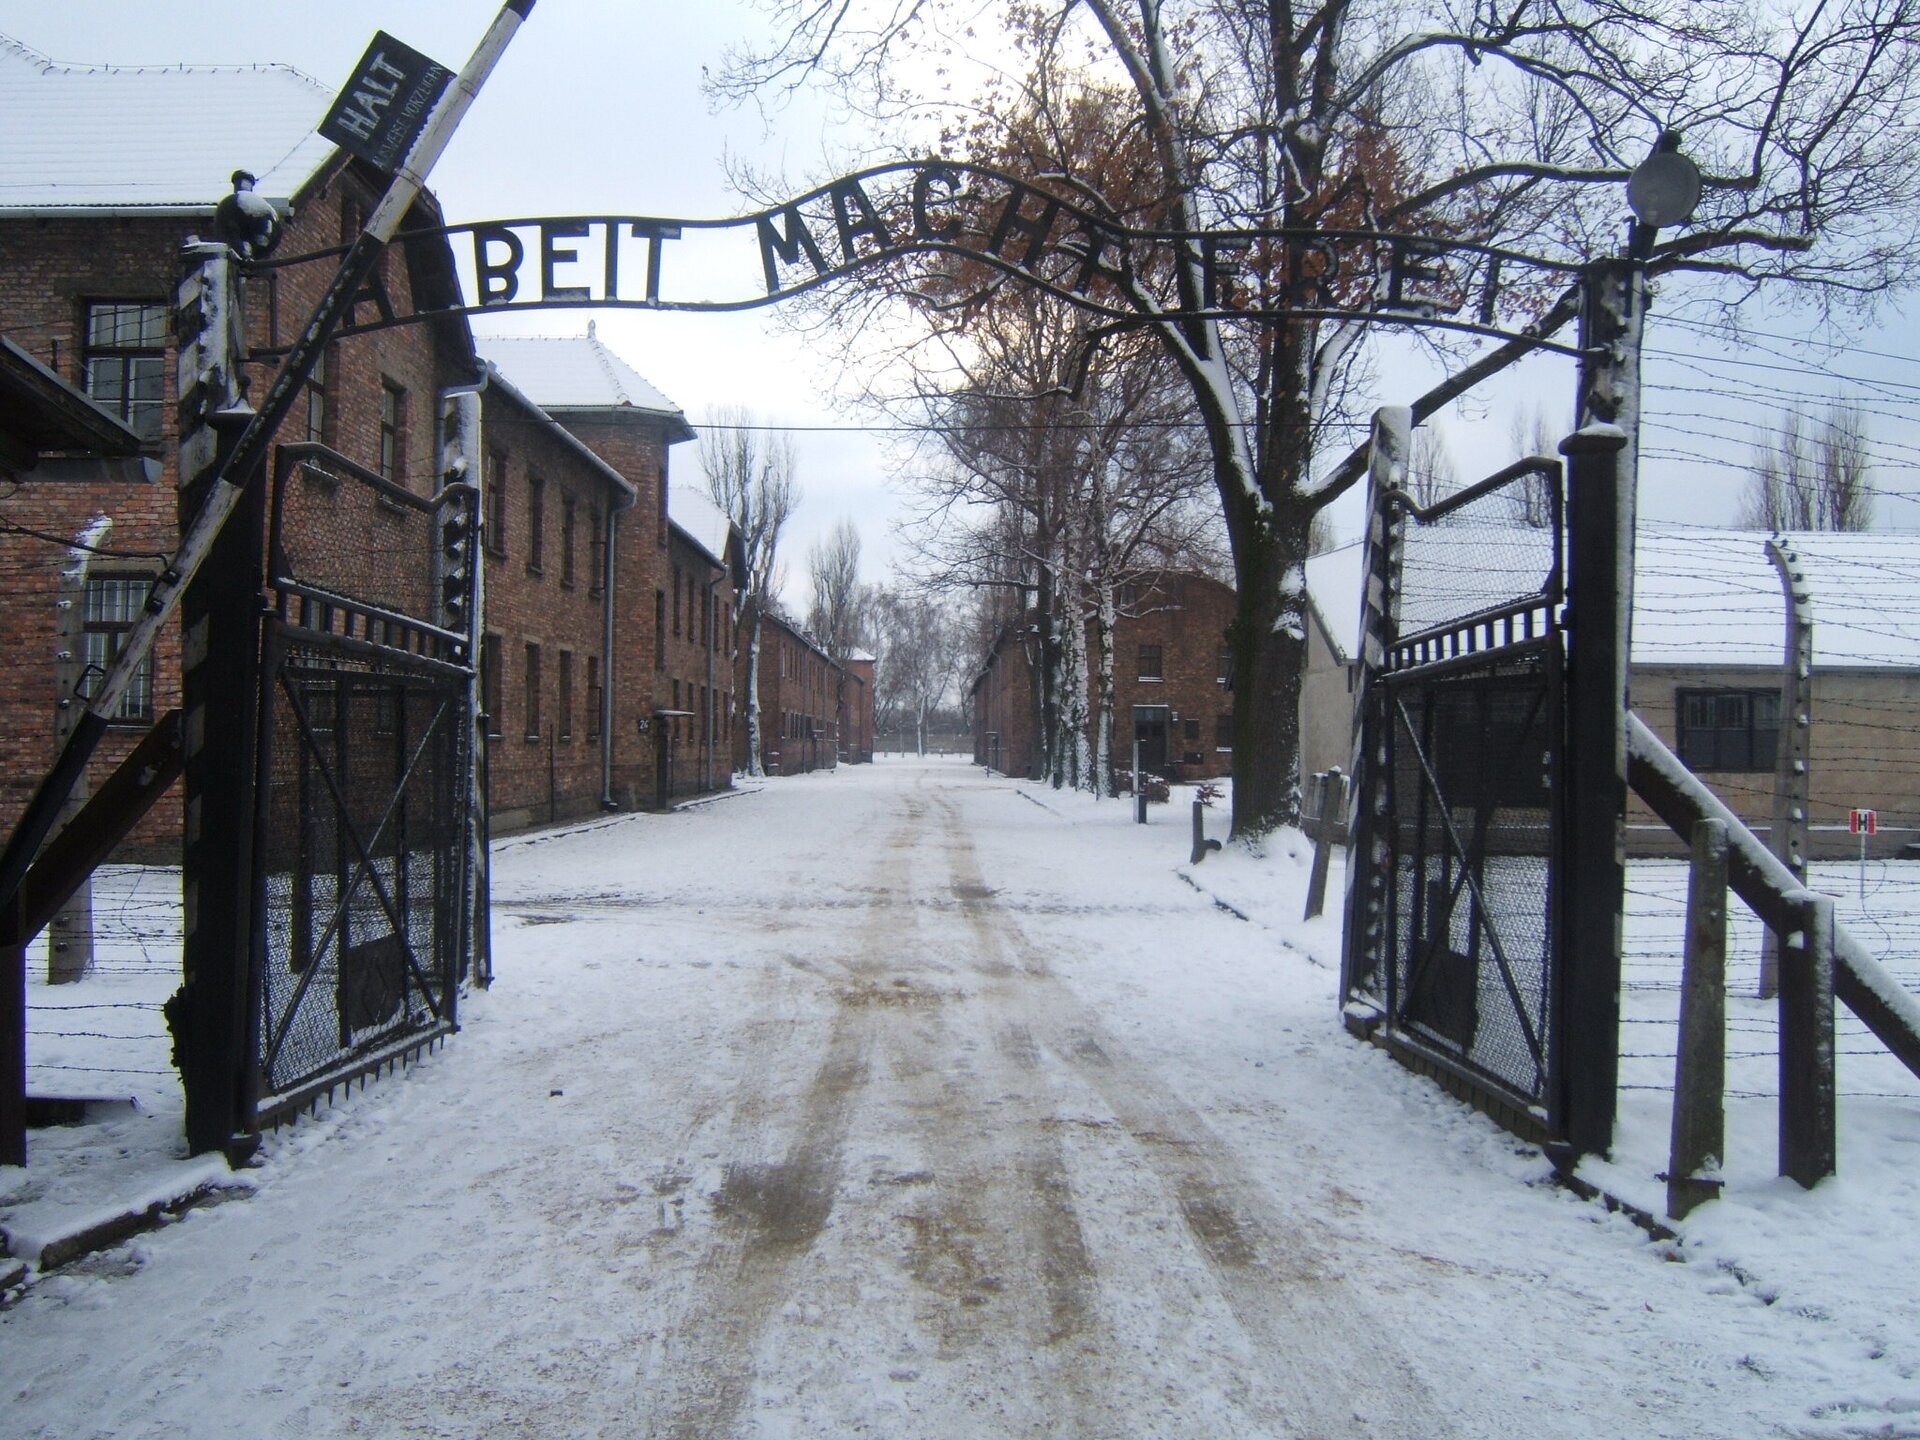 Zdjęcie przedstawia bramę wjazdową do Auschwitz. Widnieje na niej niemiecki napis: Arbeit macht frei, który oznacza "Praca czyni wolnym". Za bramą widać ceglane budynki ustawione po obu stronach drogi. Płot jest zrobiony z drutu kolczastego.